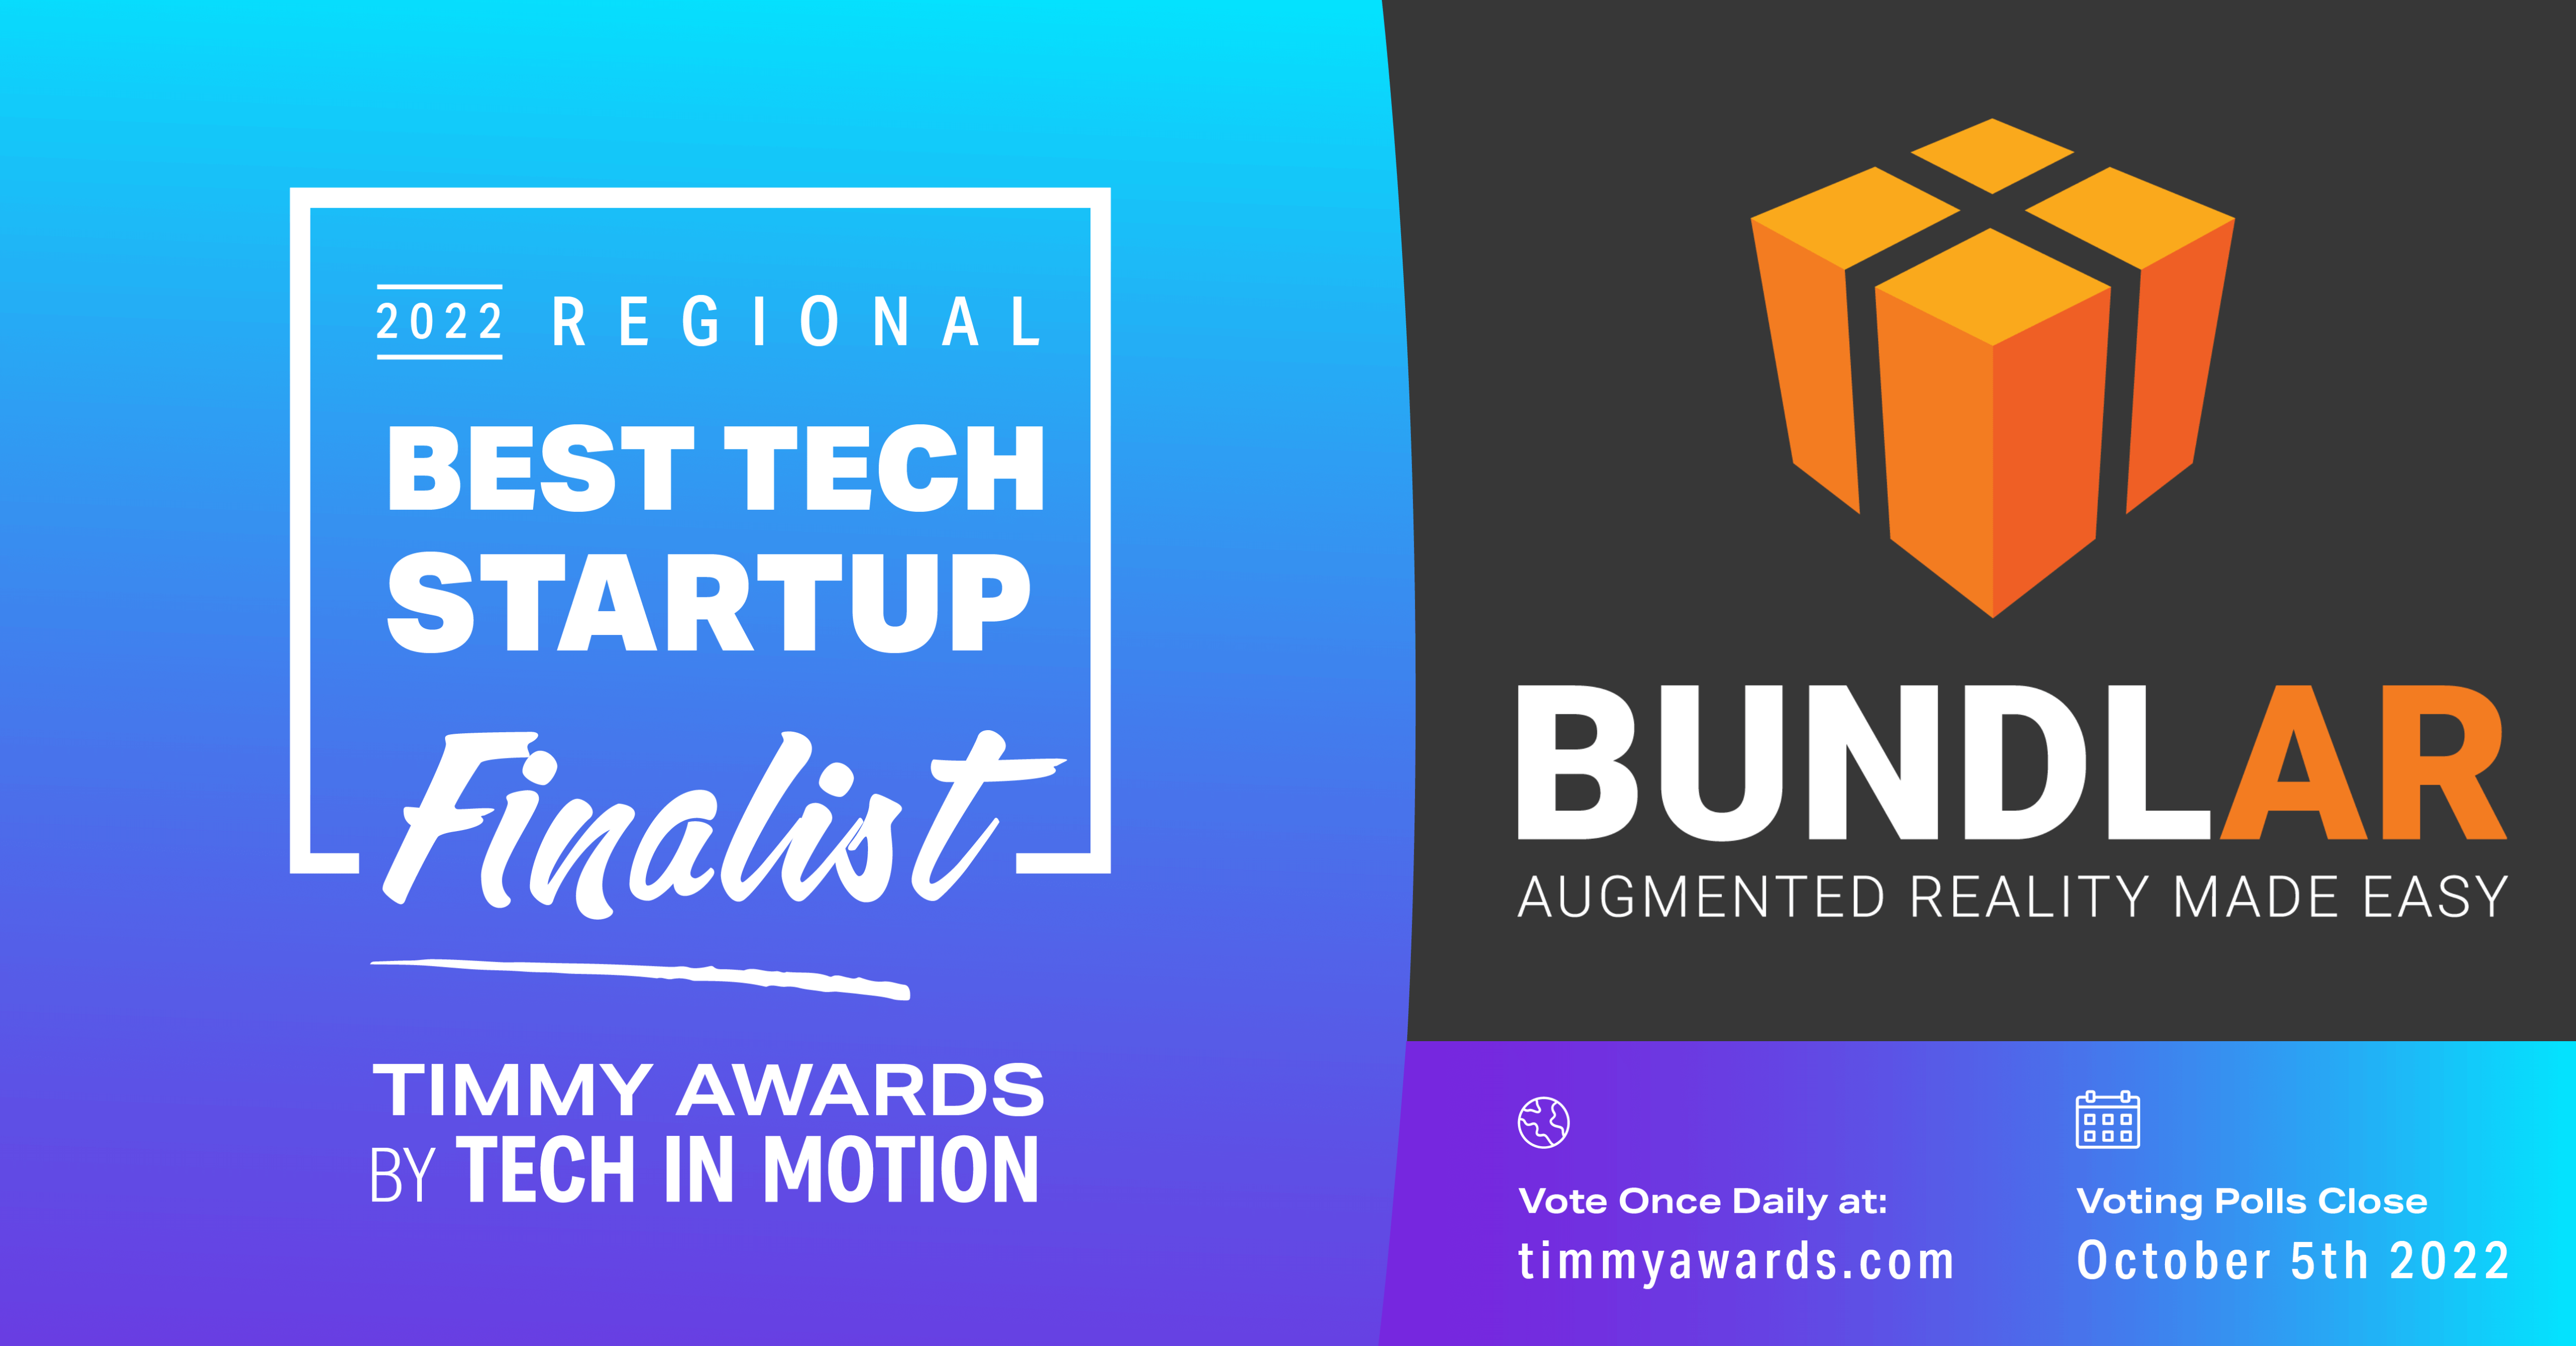 Tech in Motion Announces BUNDLAR as 2022 Best Tech Startup Finalist